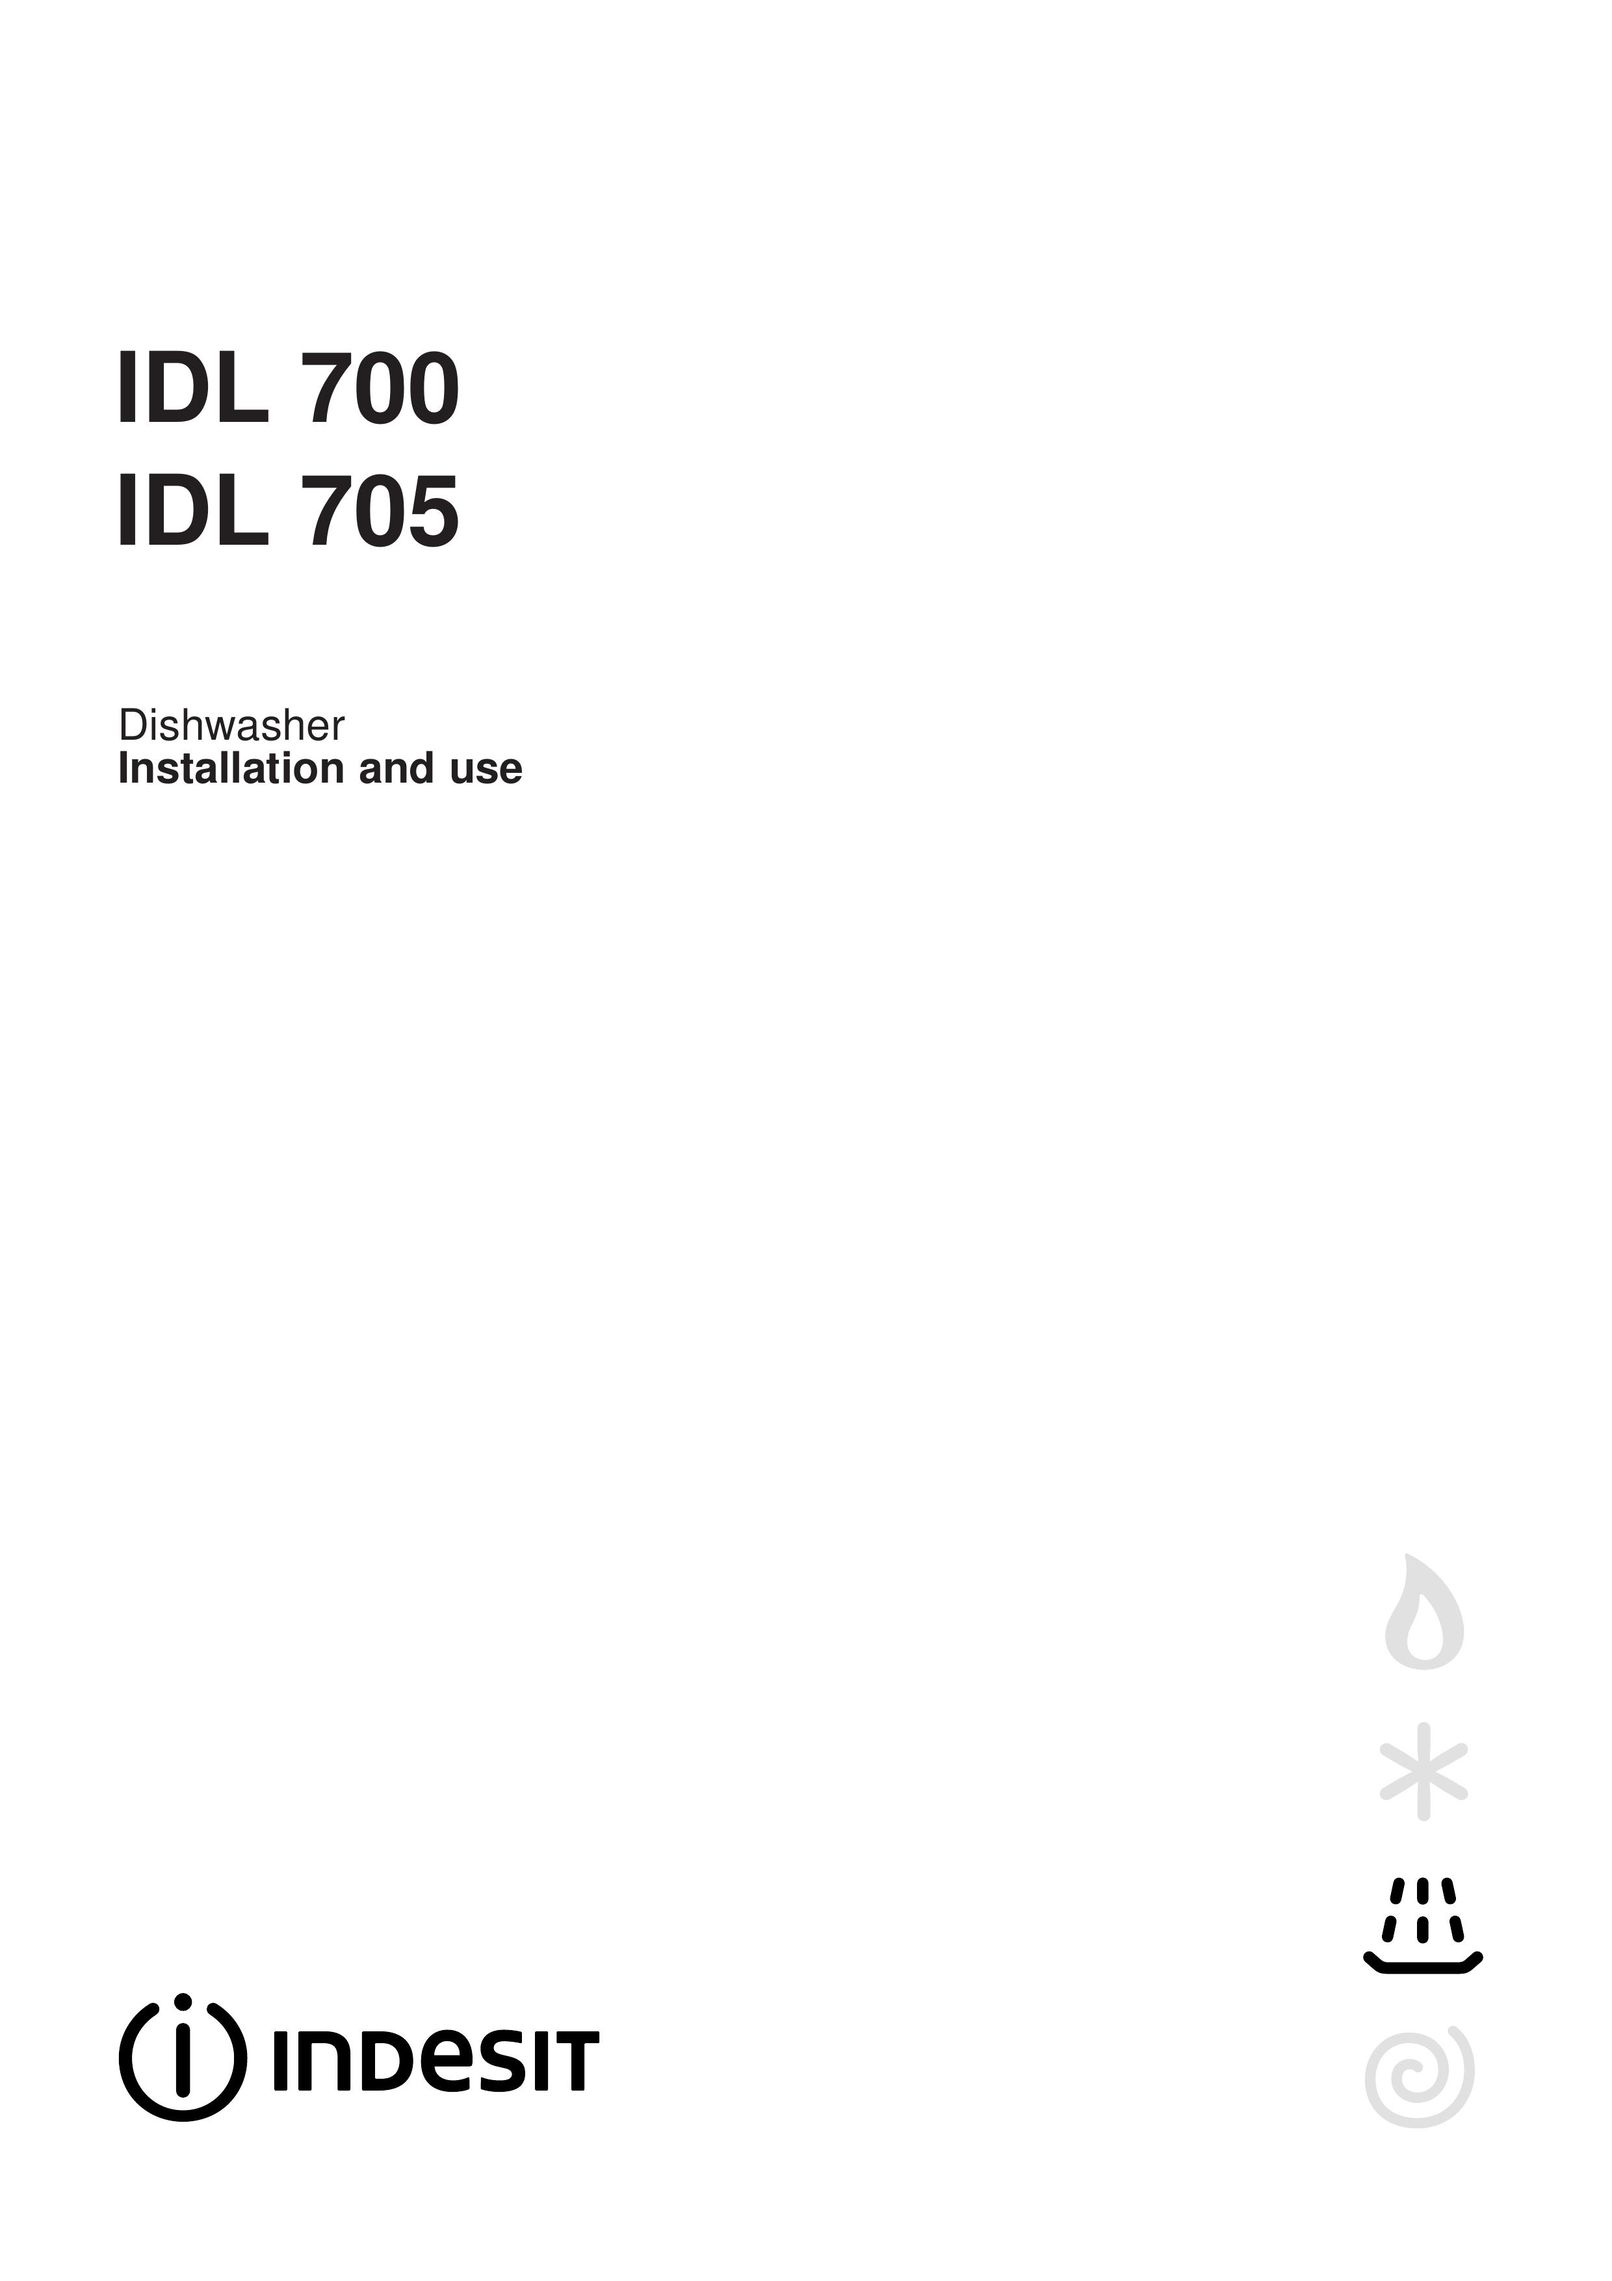 Indesit IDL 700 Dishwasher User Manual